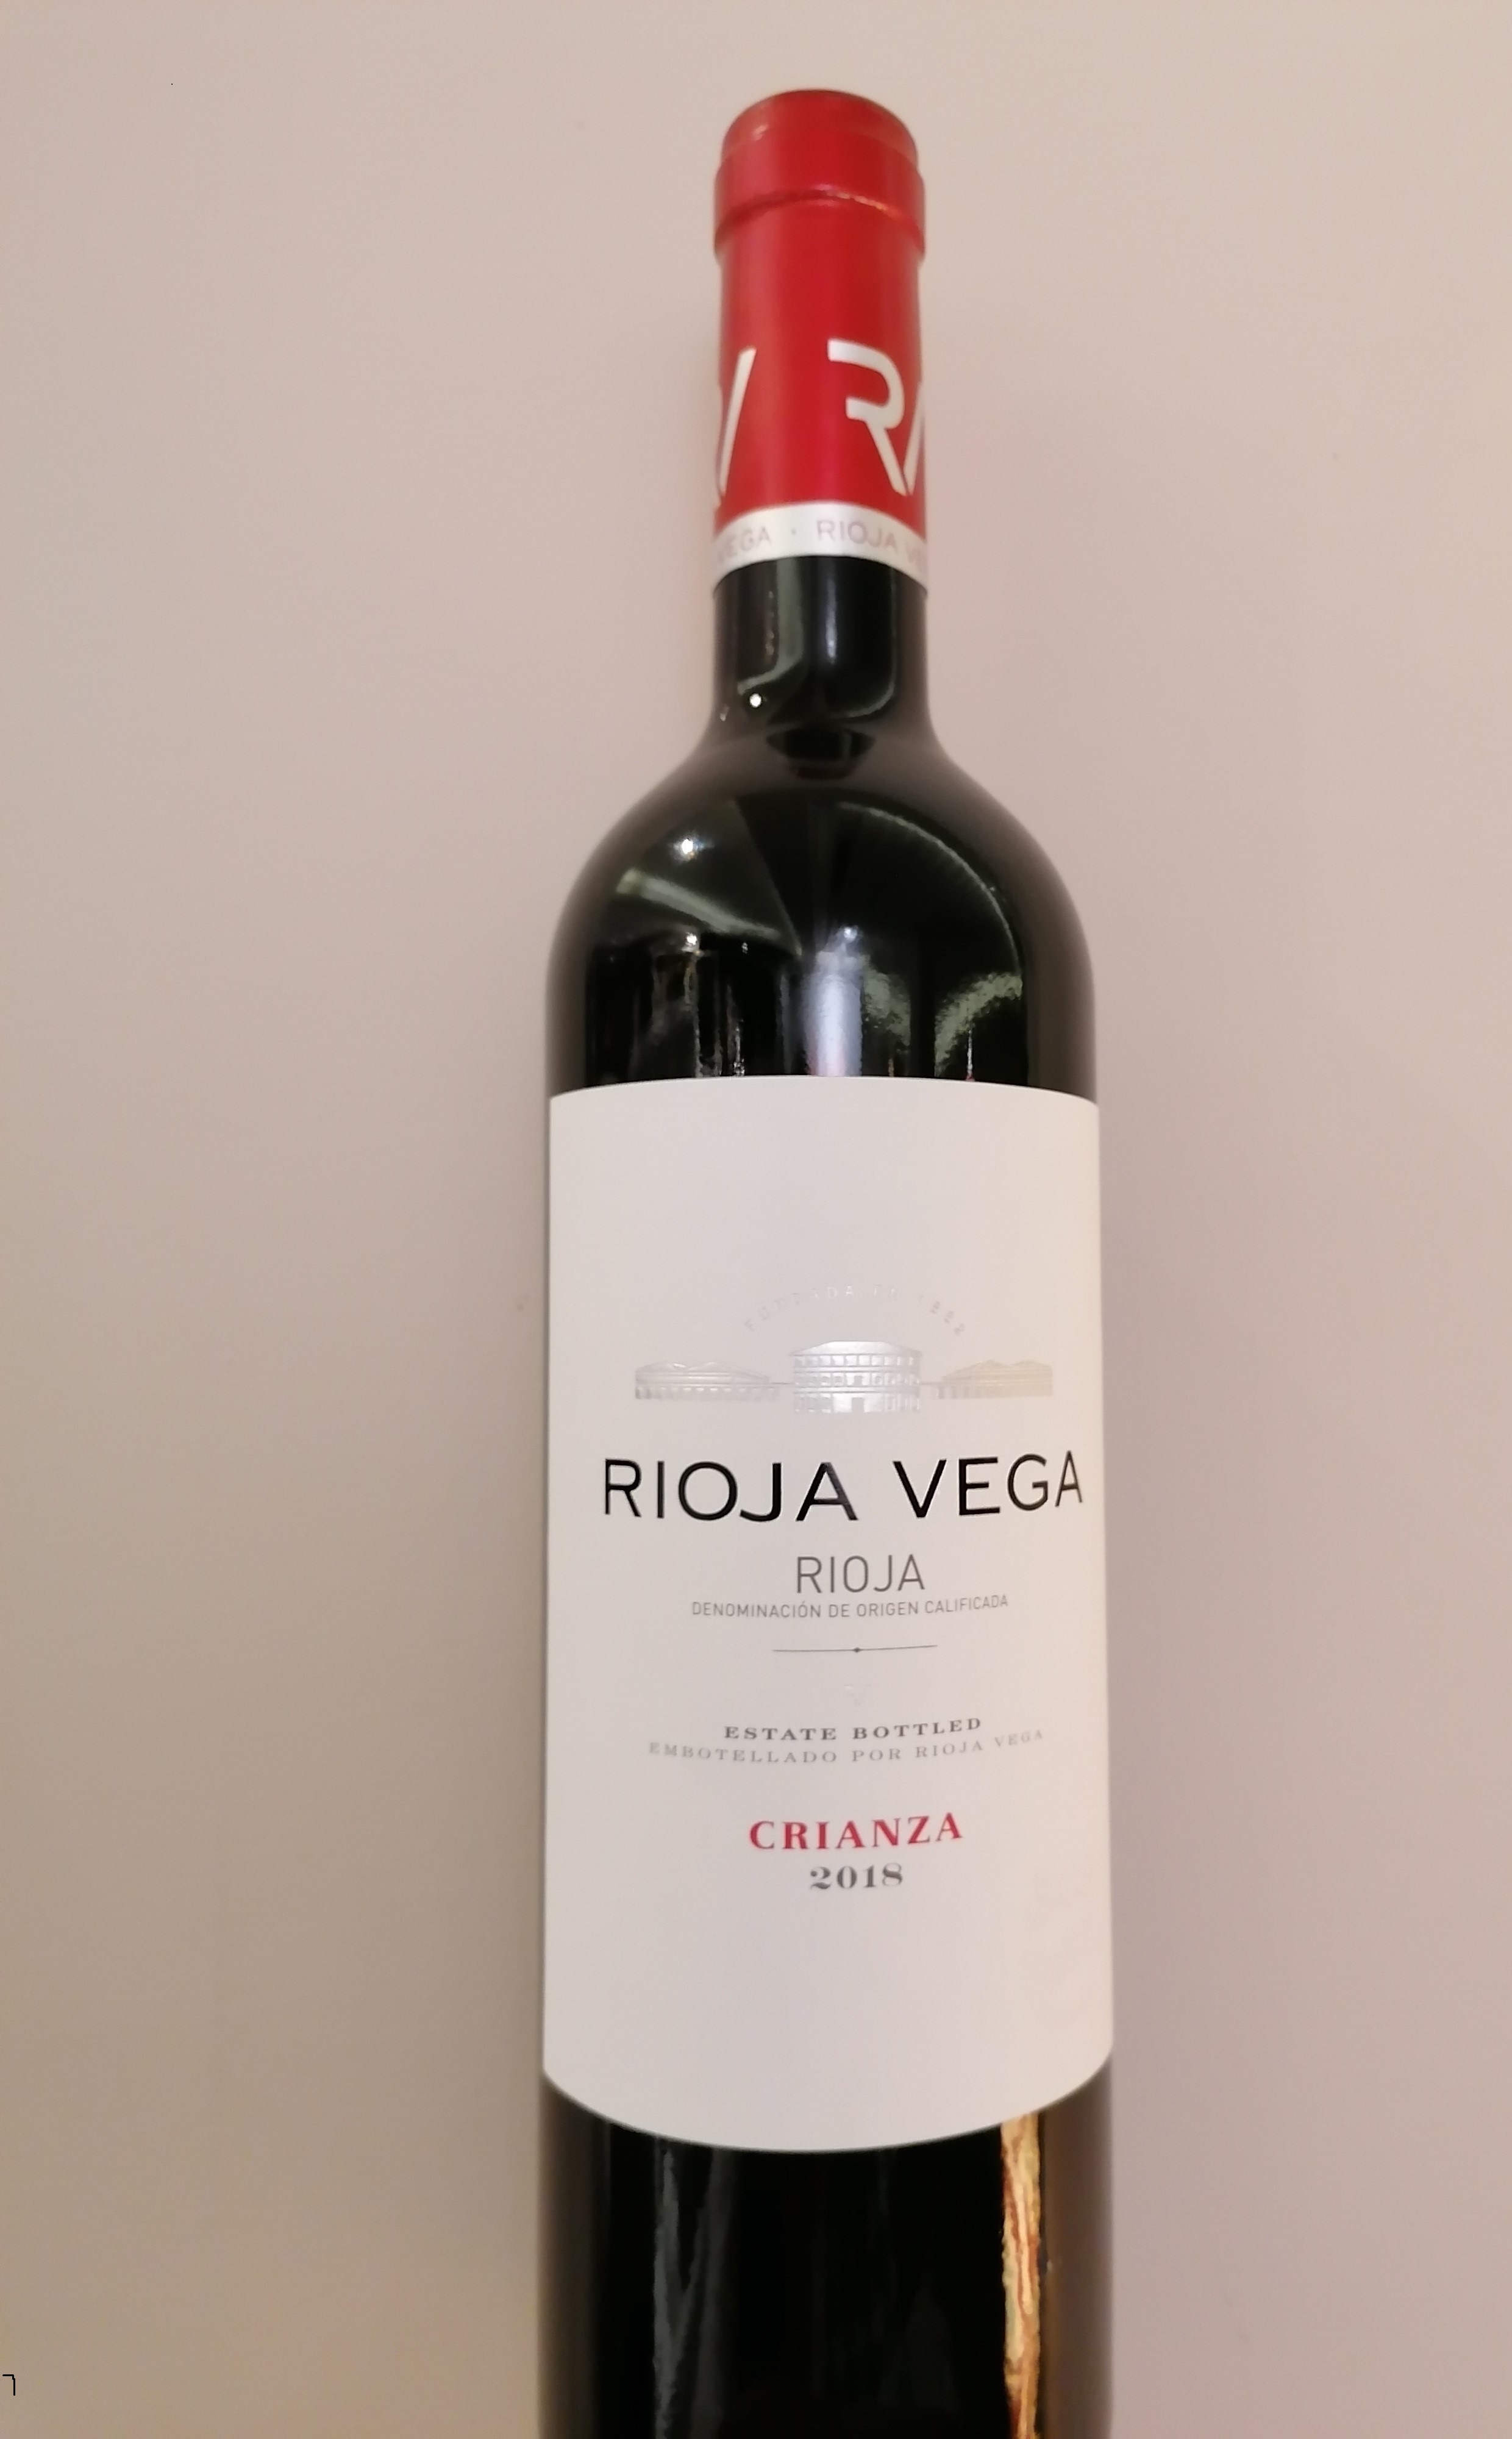 Rioja Vega crianza (Recommandation de la maison)